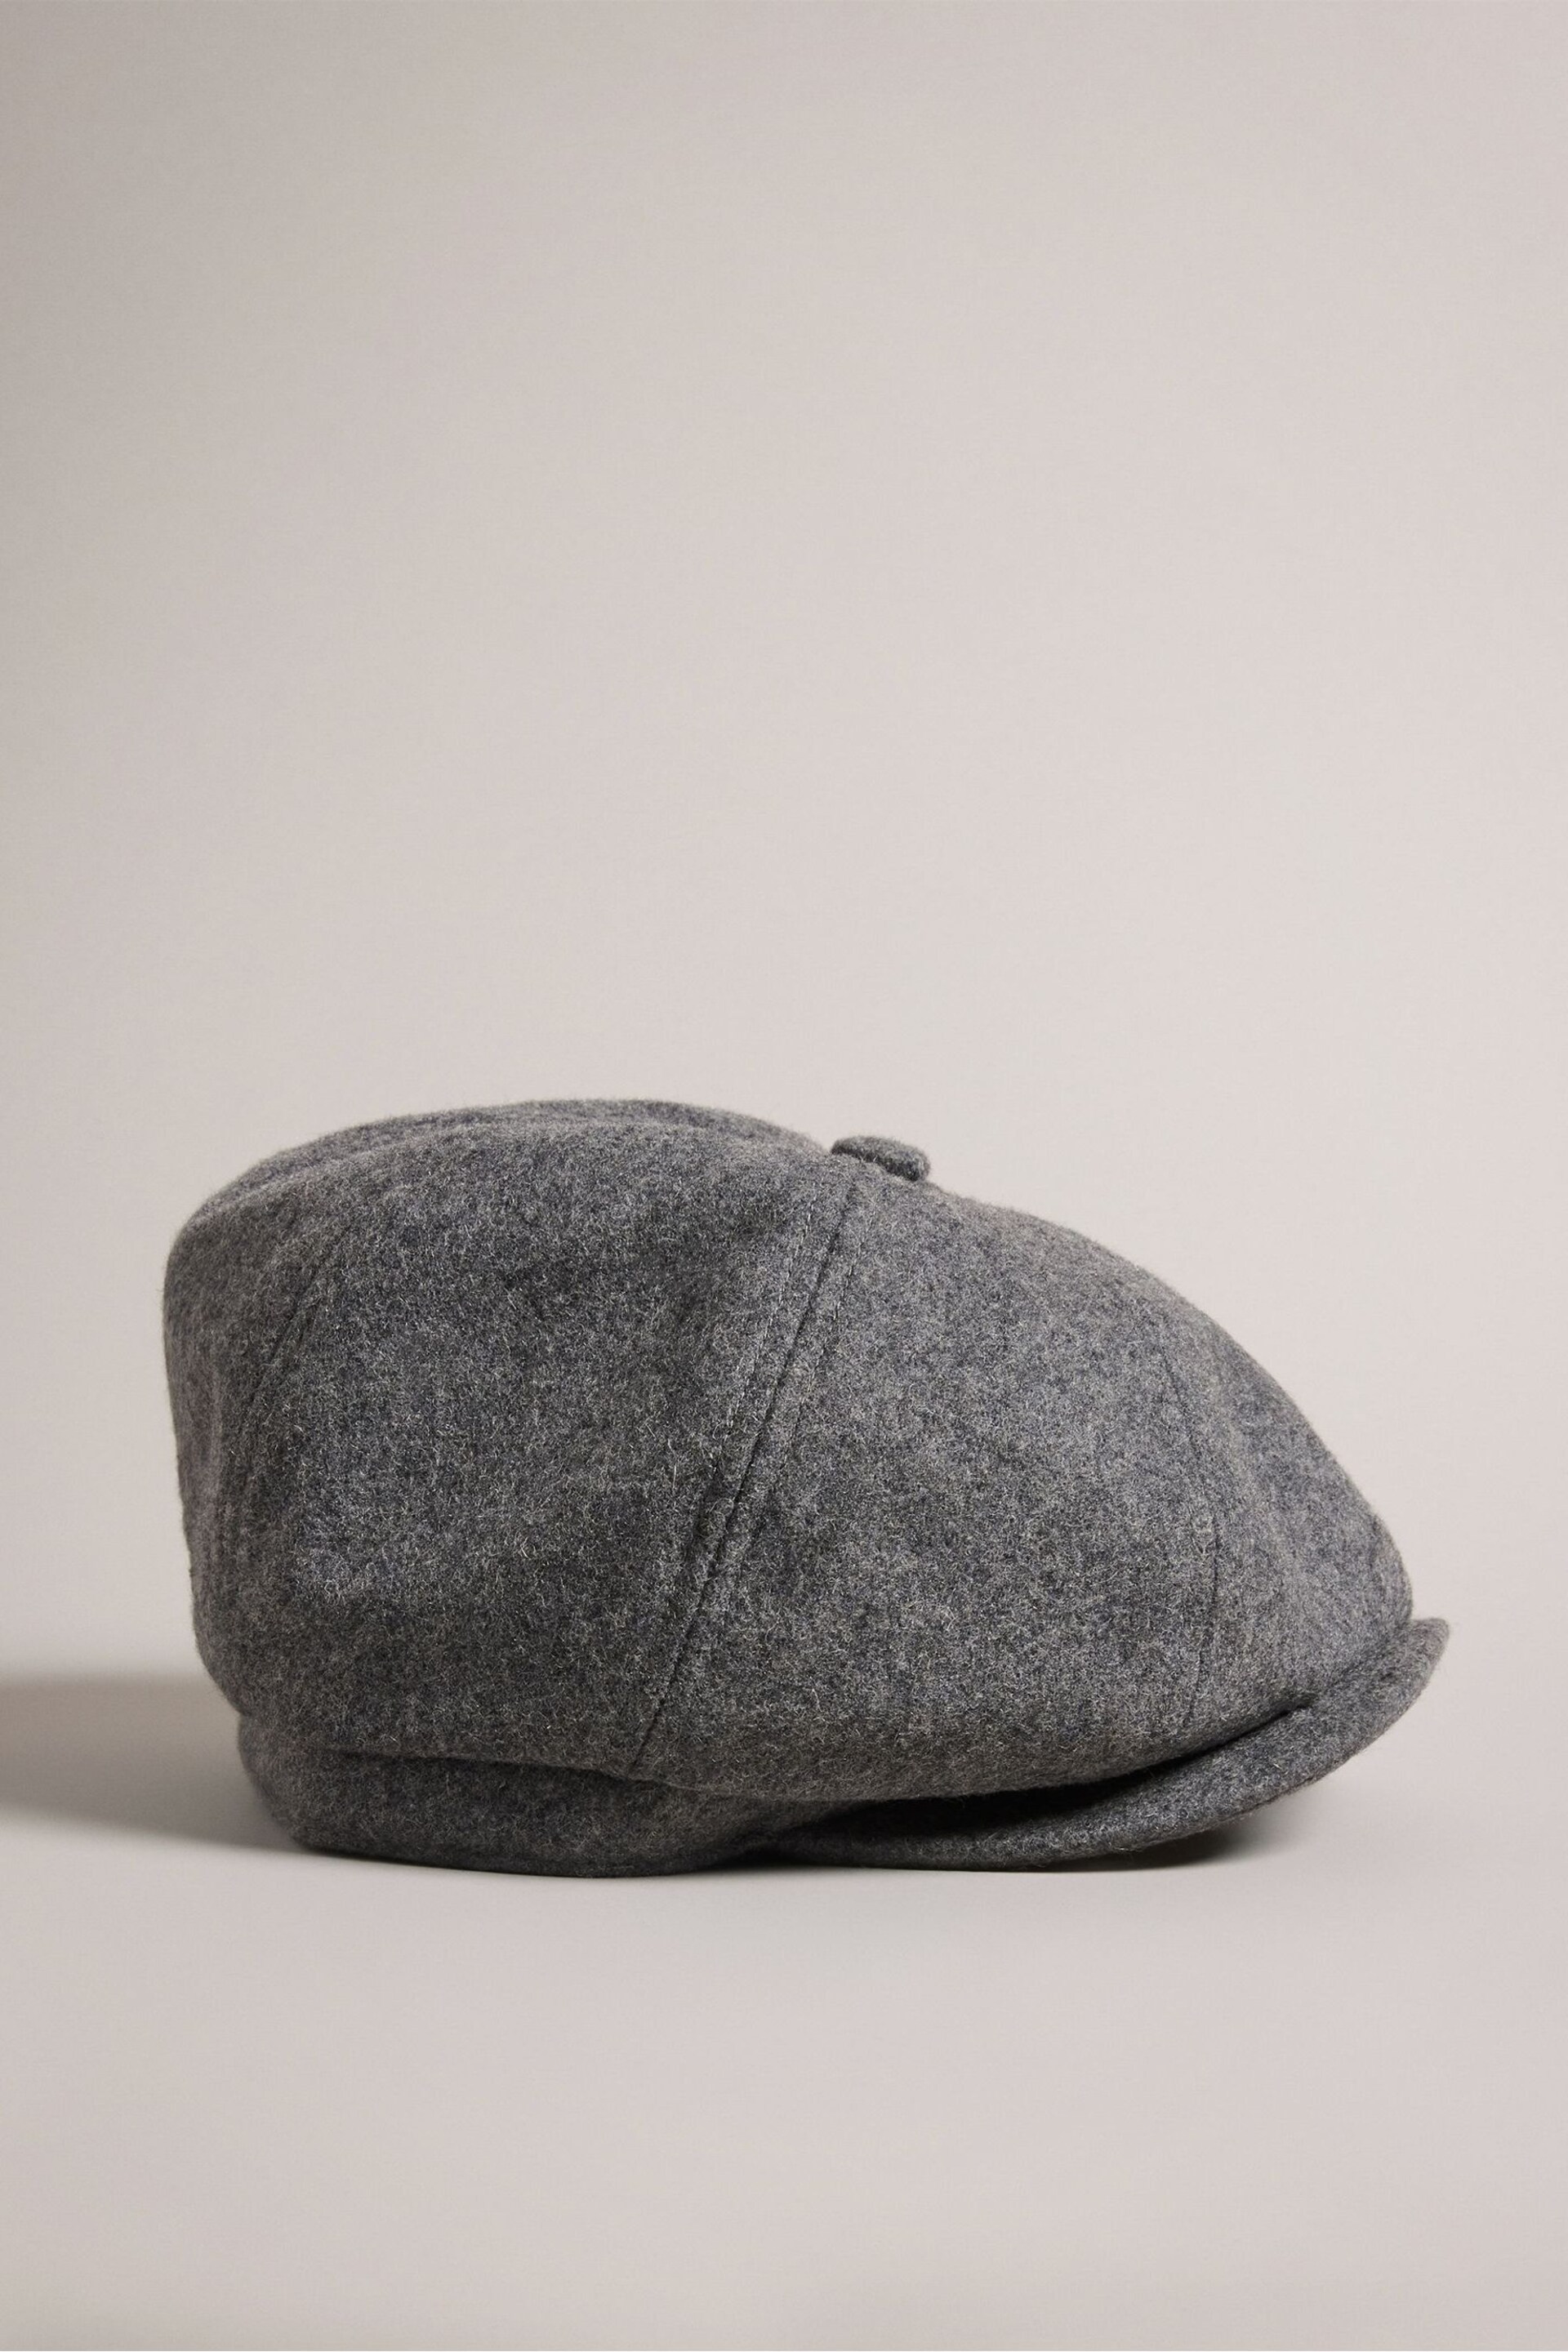 Ted Baker Grey Eliotti Woollen Baker Boy Hat - Image 1 of 5